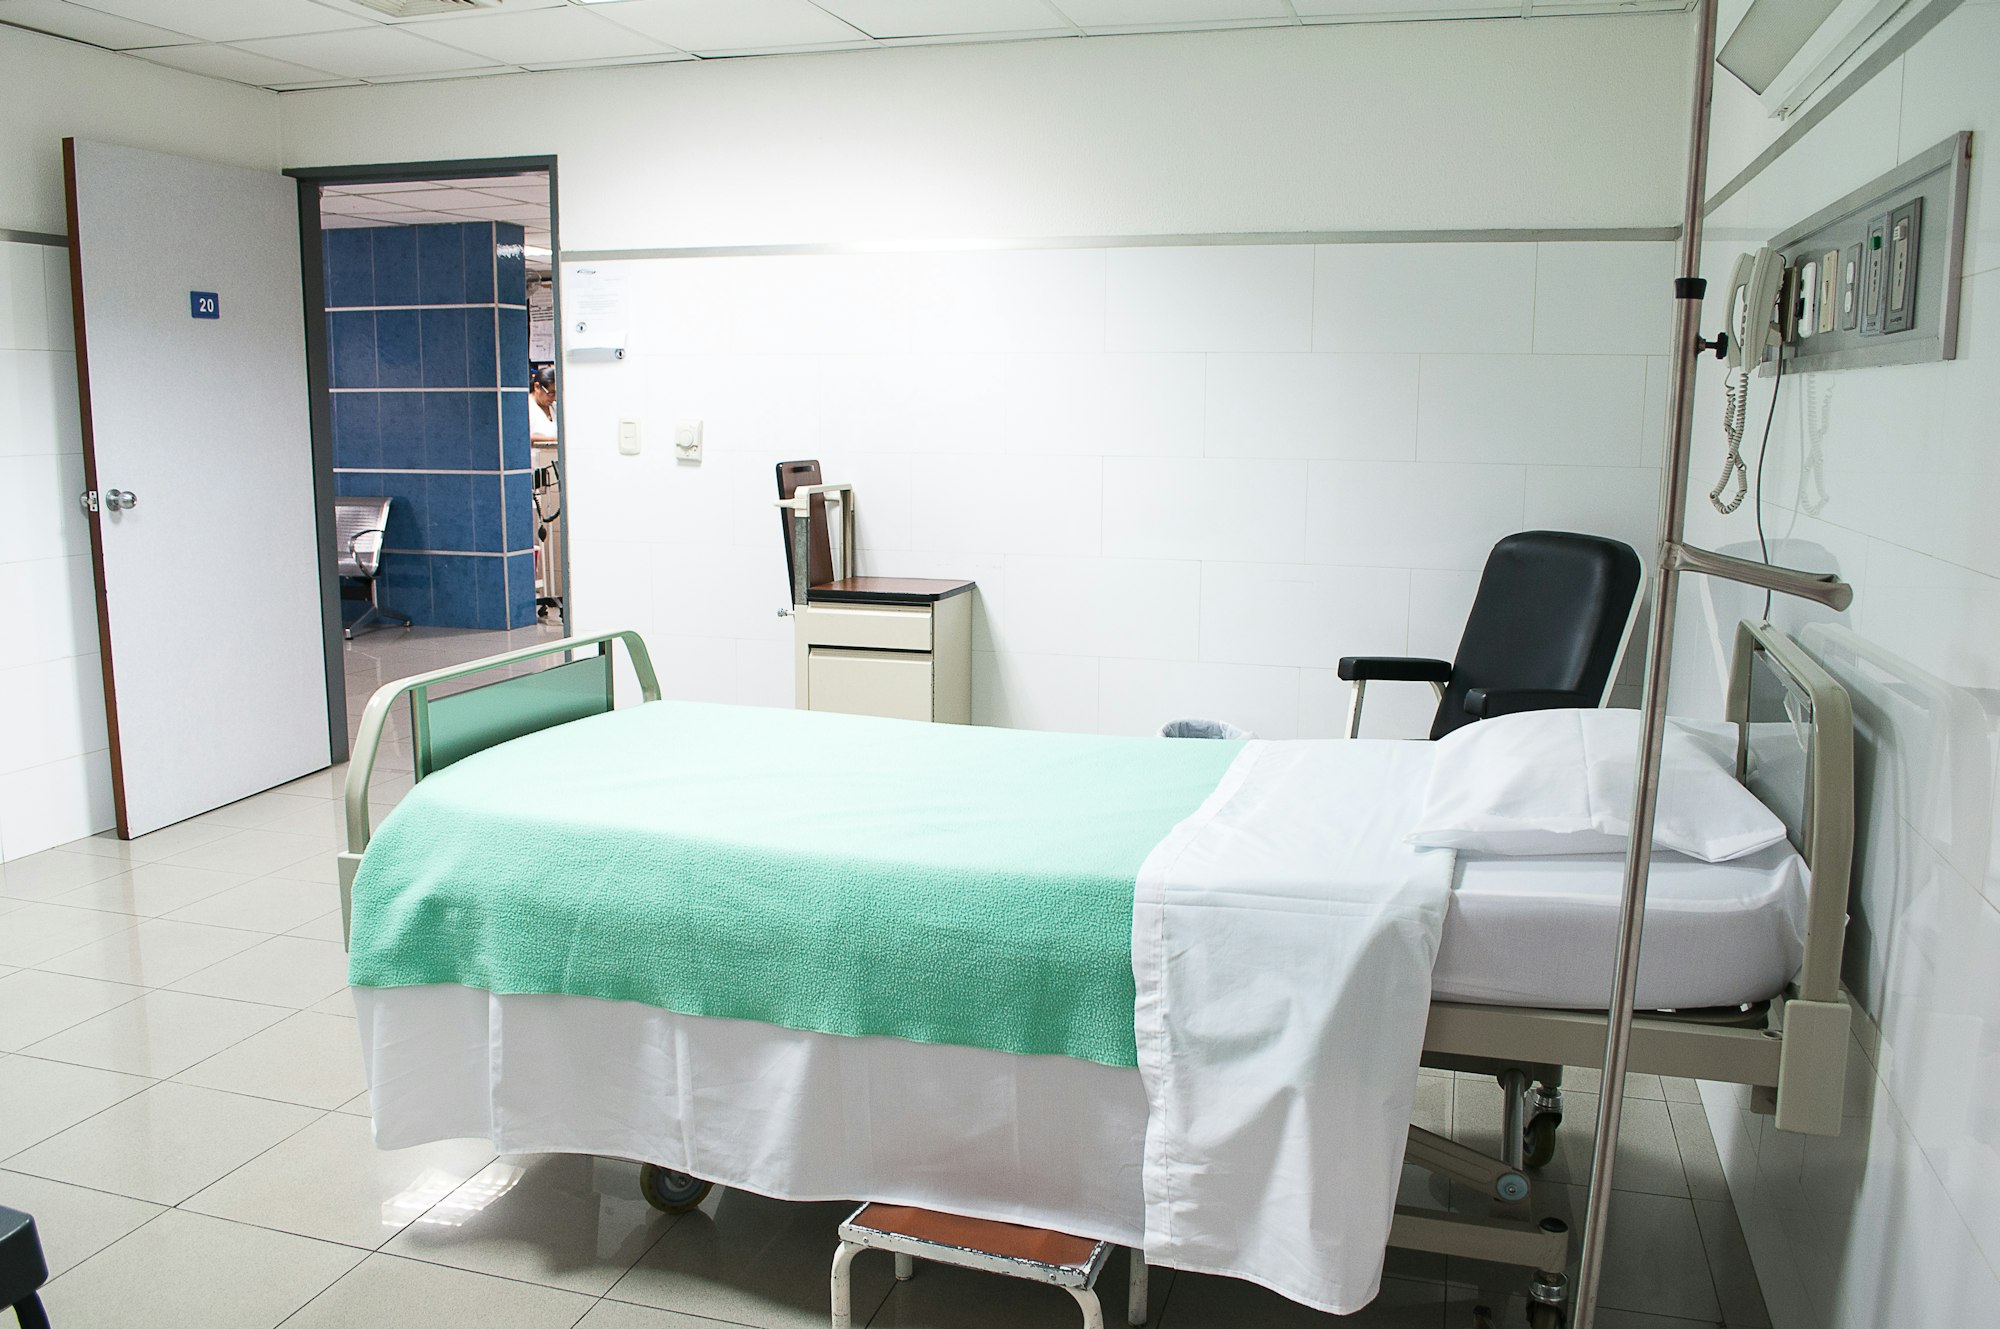 Nowy Sącz: Koronawirus w Zakładzie Radioterapii szpitala. Wstrzymane przyjęcia